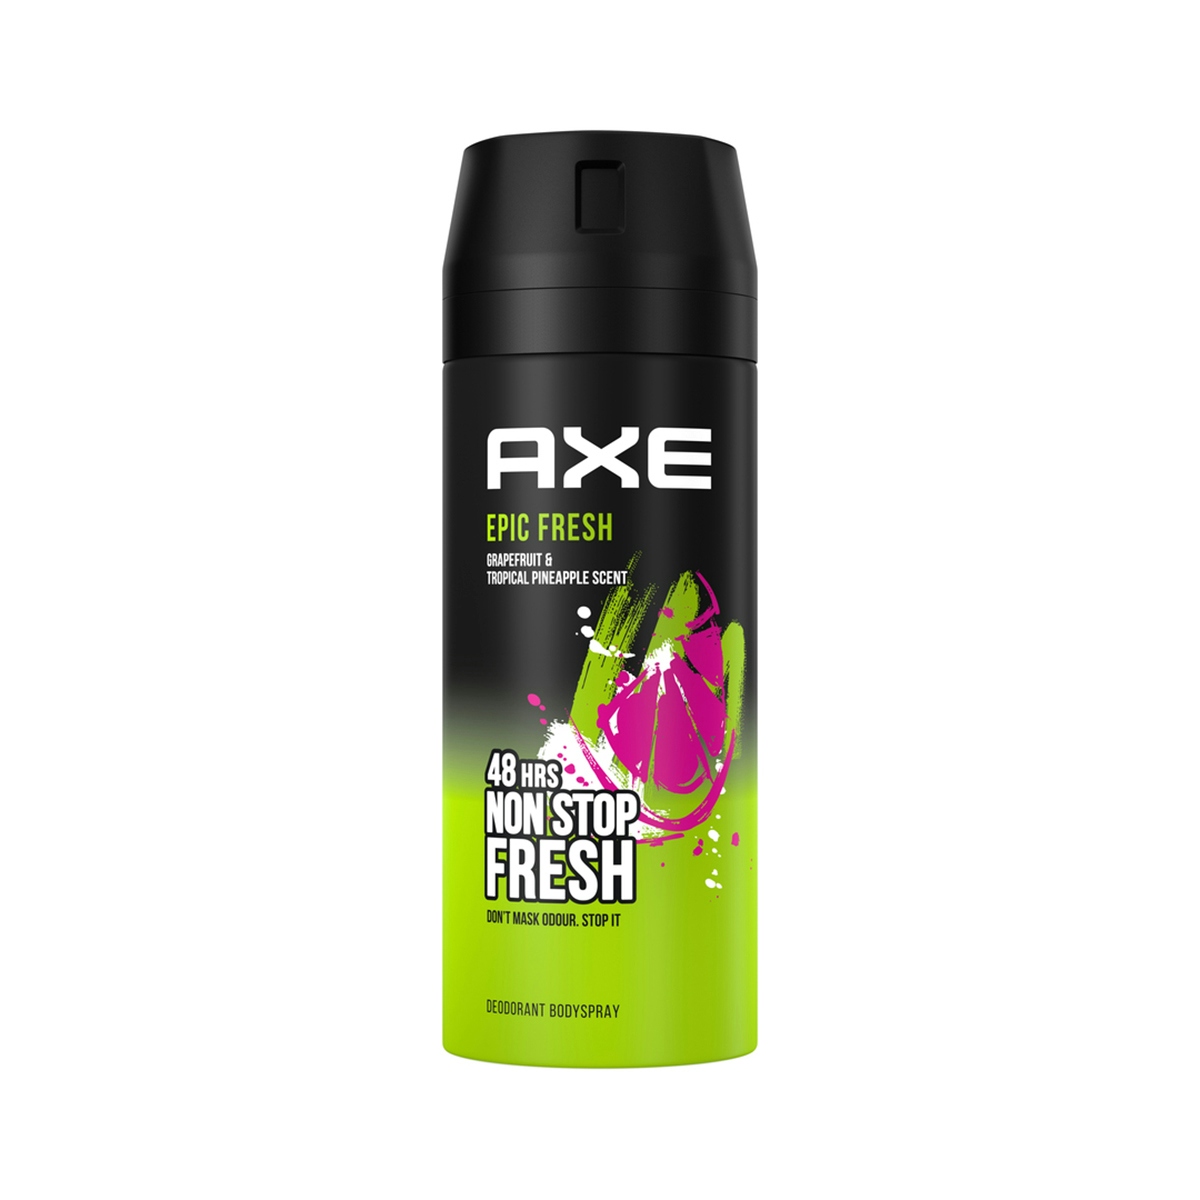 Desodorante Bodyspray Epic Fresh Axe 150 ml